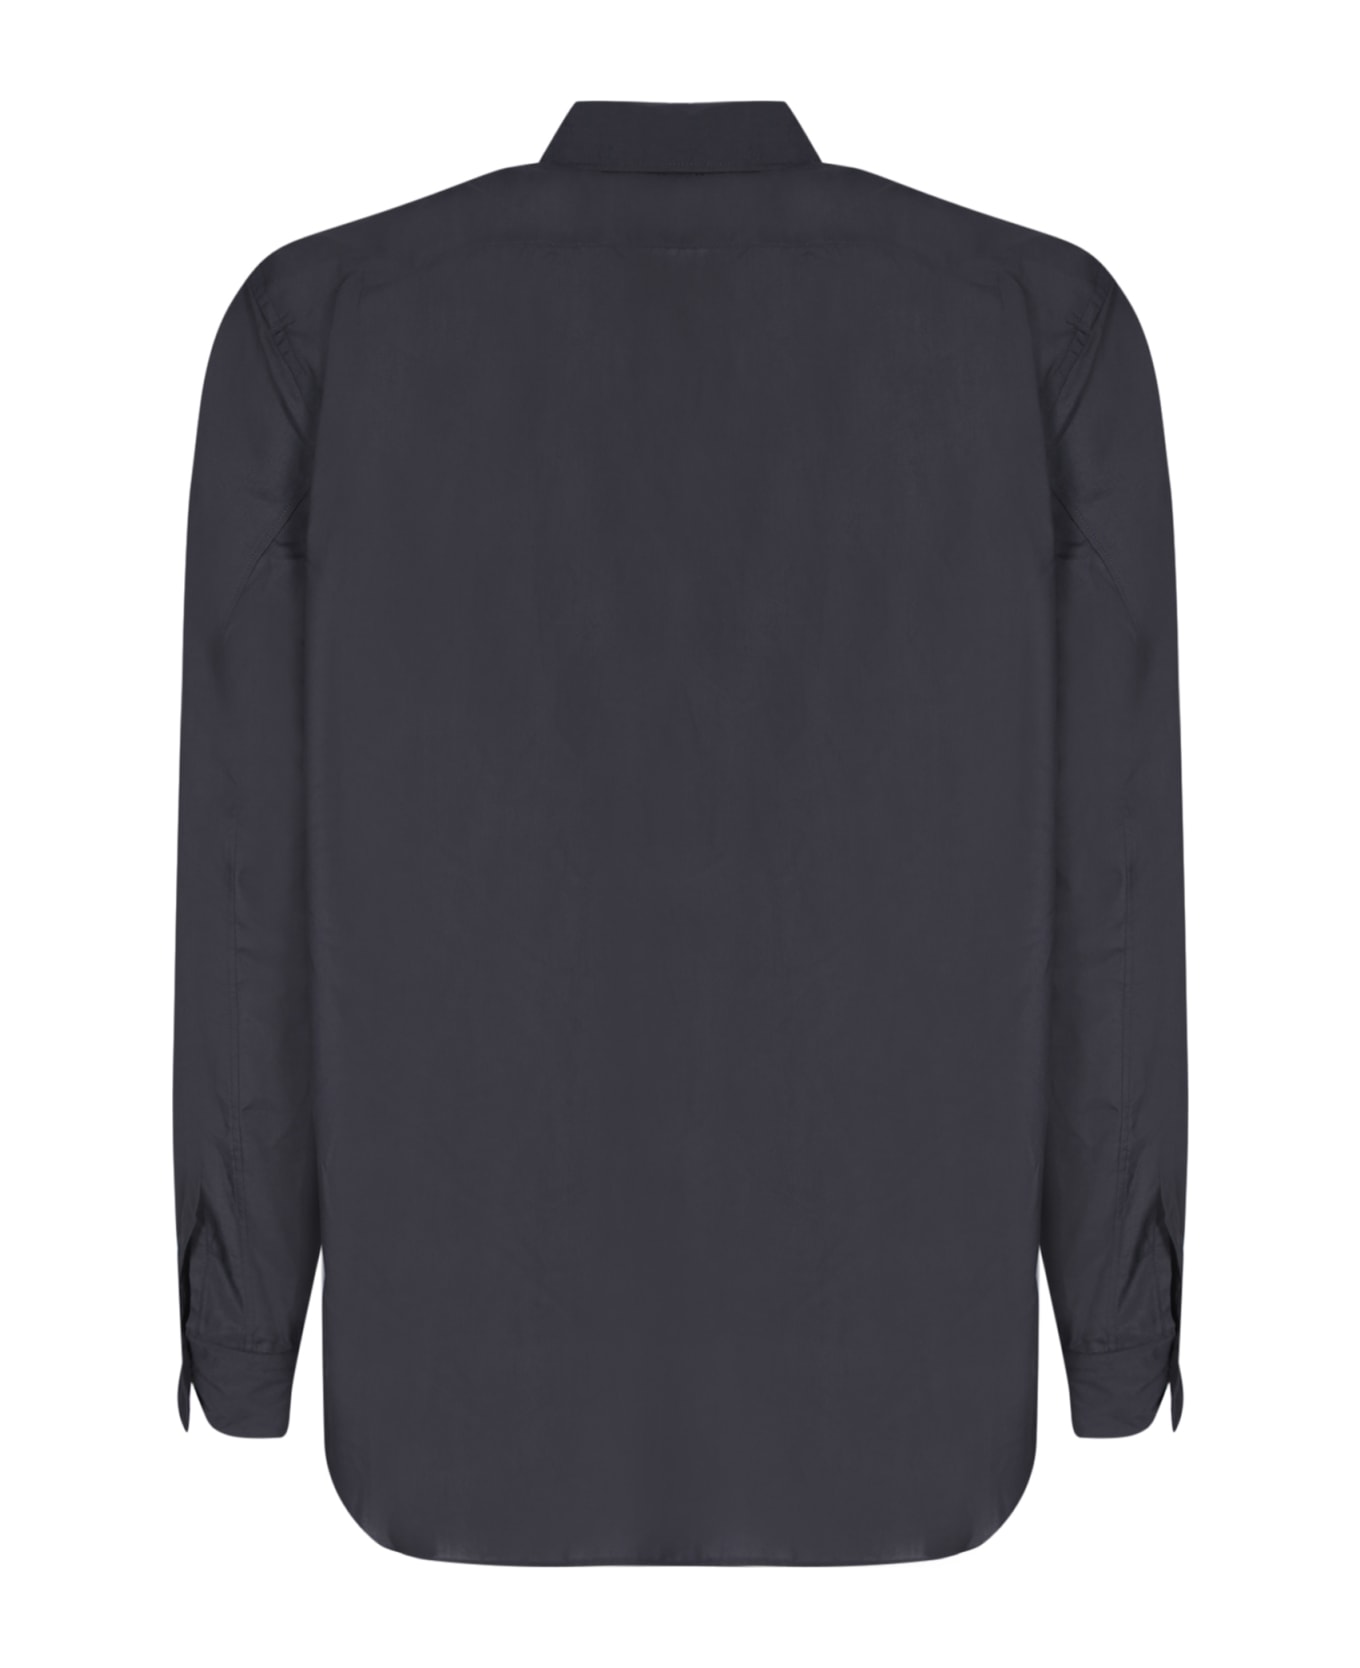 Comme Des Garçons Homme Plus Faux Fur Details Black Shirt - Black